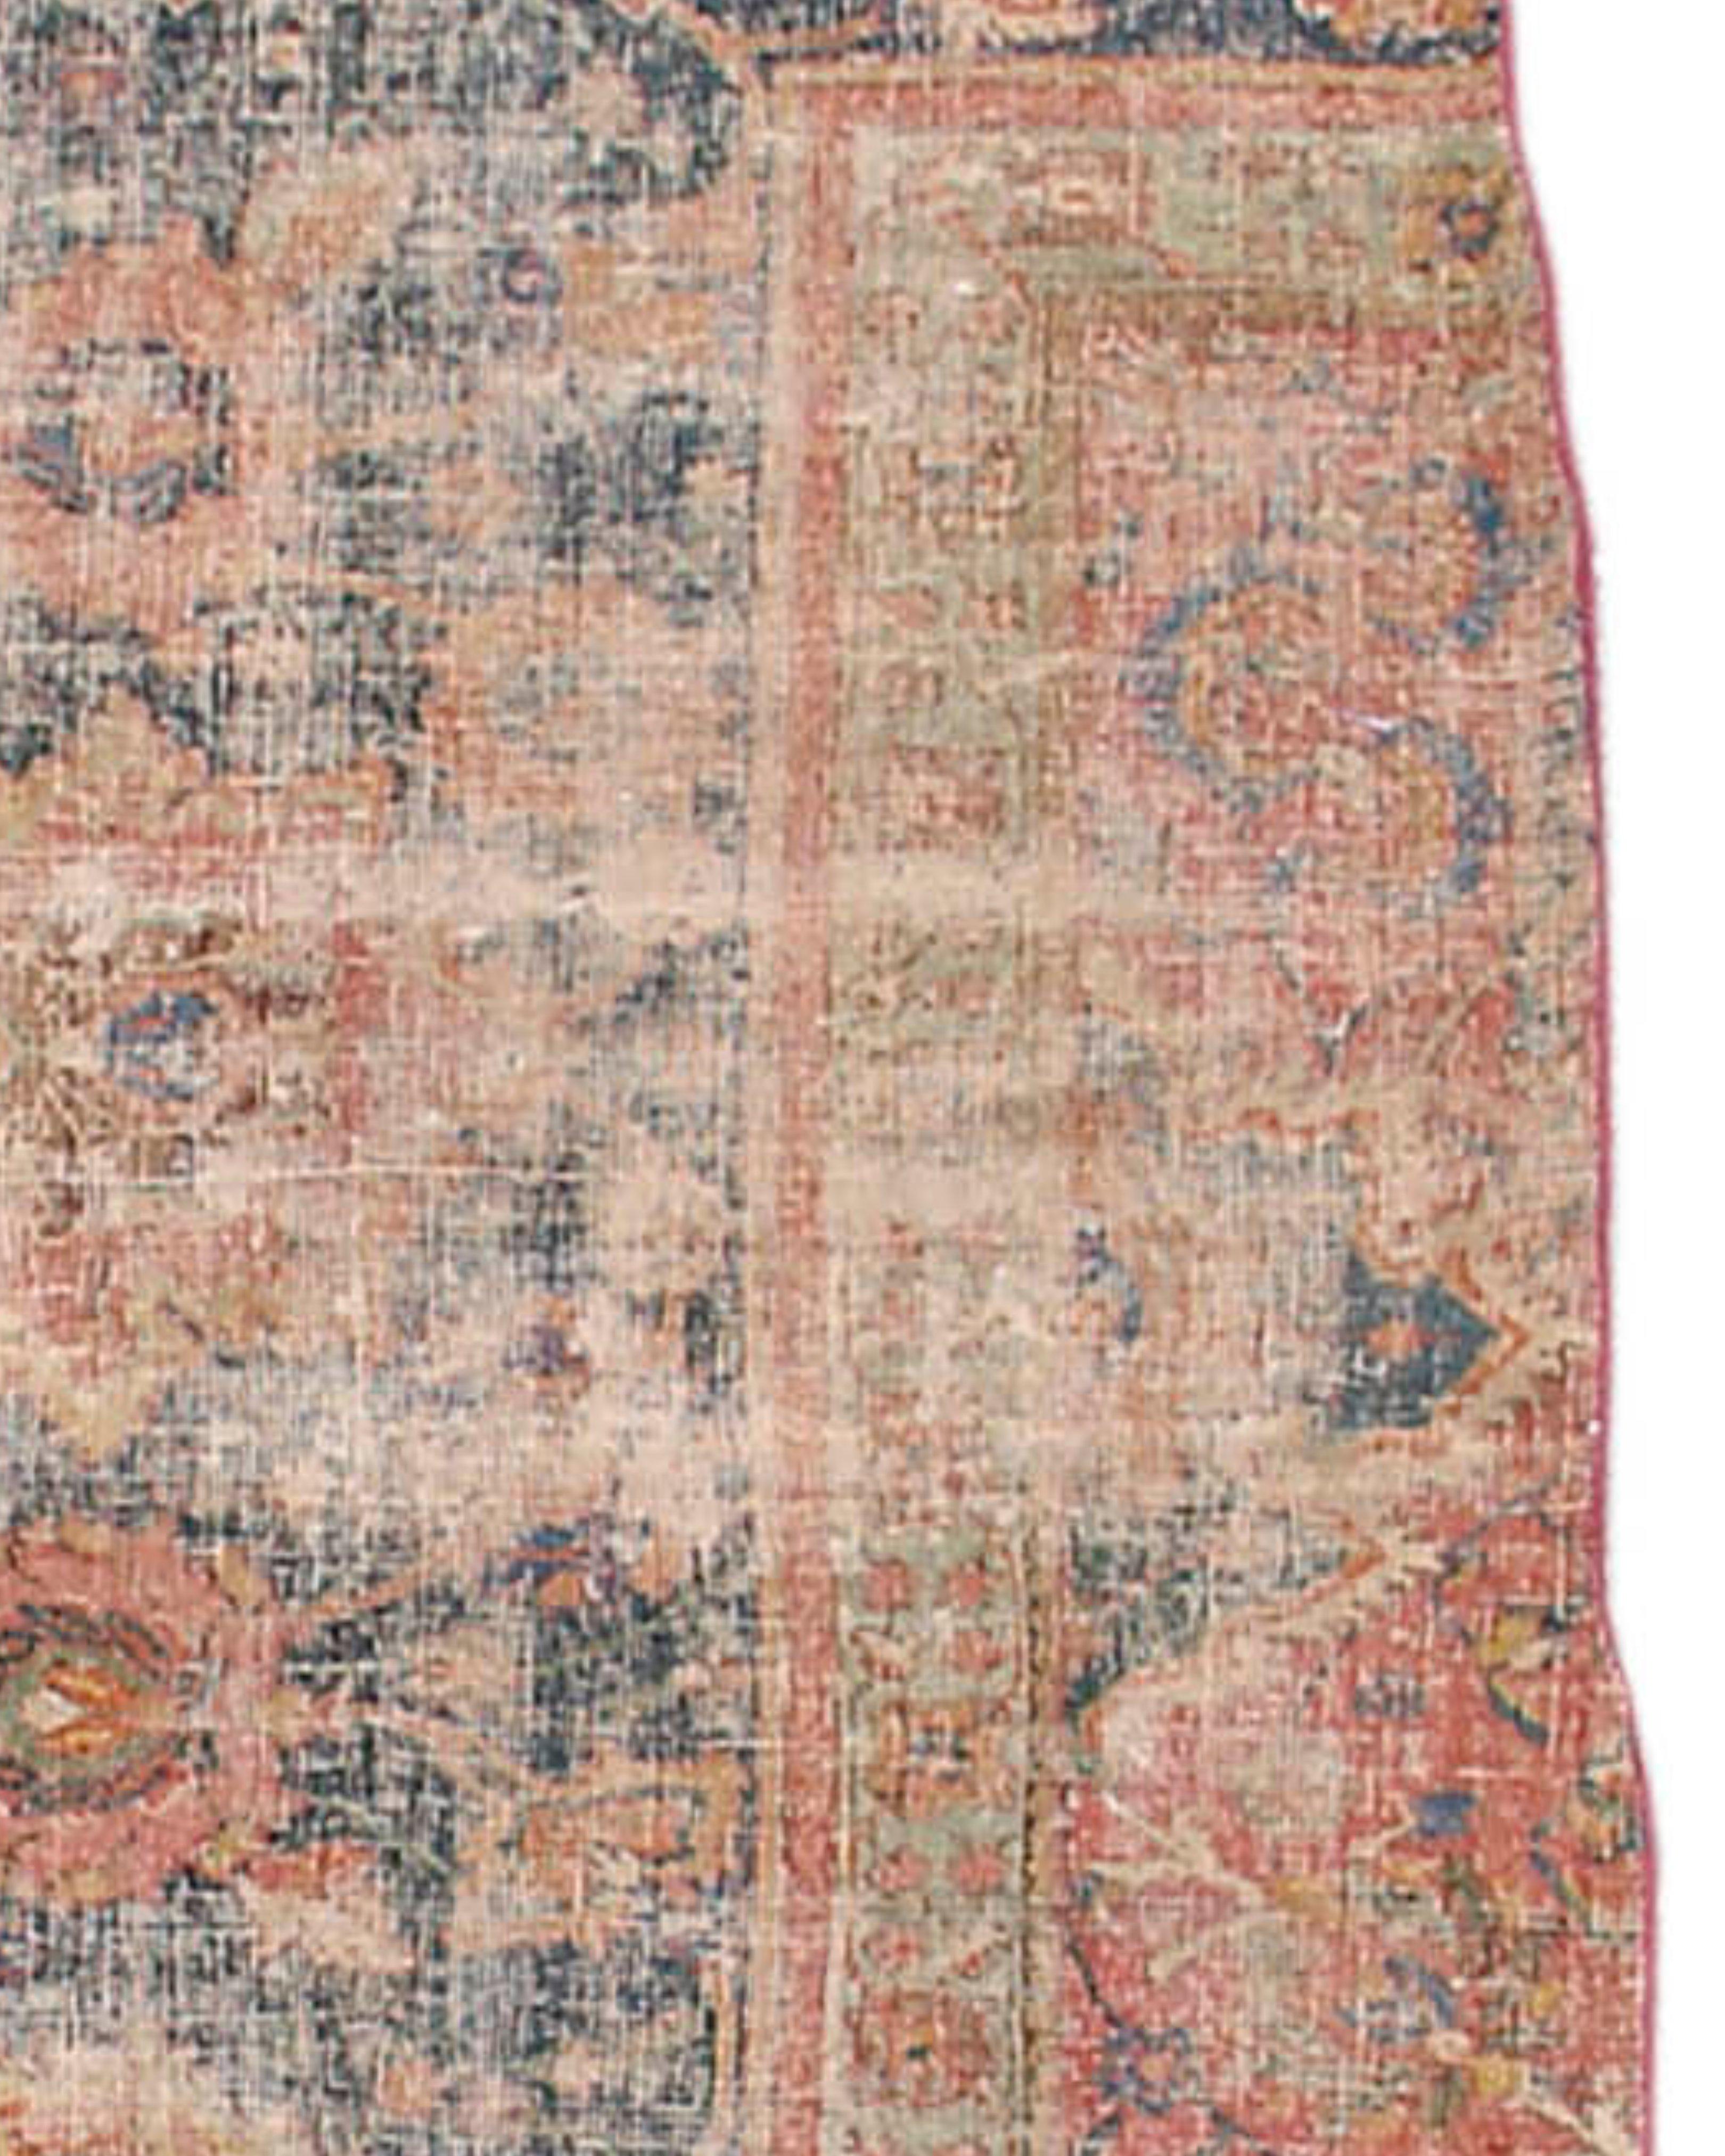 Fragment-Teppich von Isfahan, 17. Jahrhundert

Isfahan-Teppiche sind für ihre komplizierten Muster bekannt, die oft florale und arabeske Motive aufweisen, die von der Architektur der Stadt inspiriert sind. Häufig sind auch zentrale Medaillons, Vasen